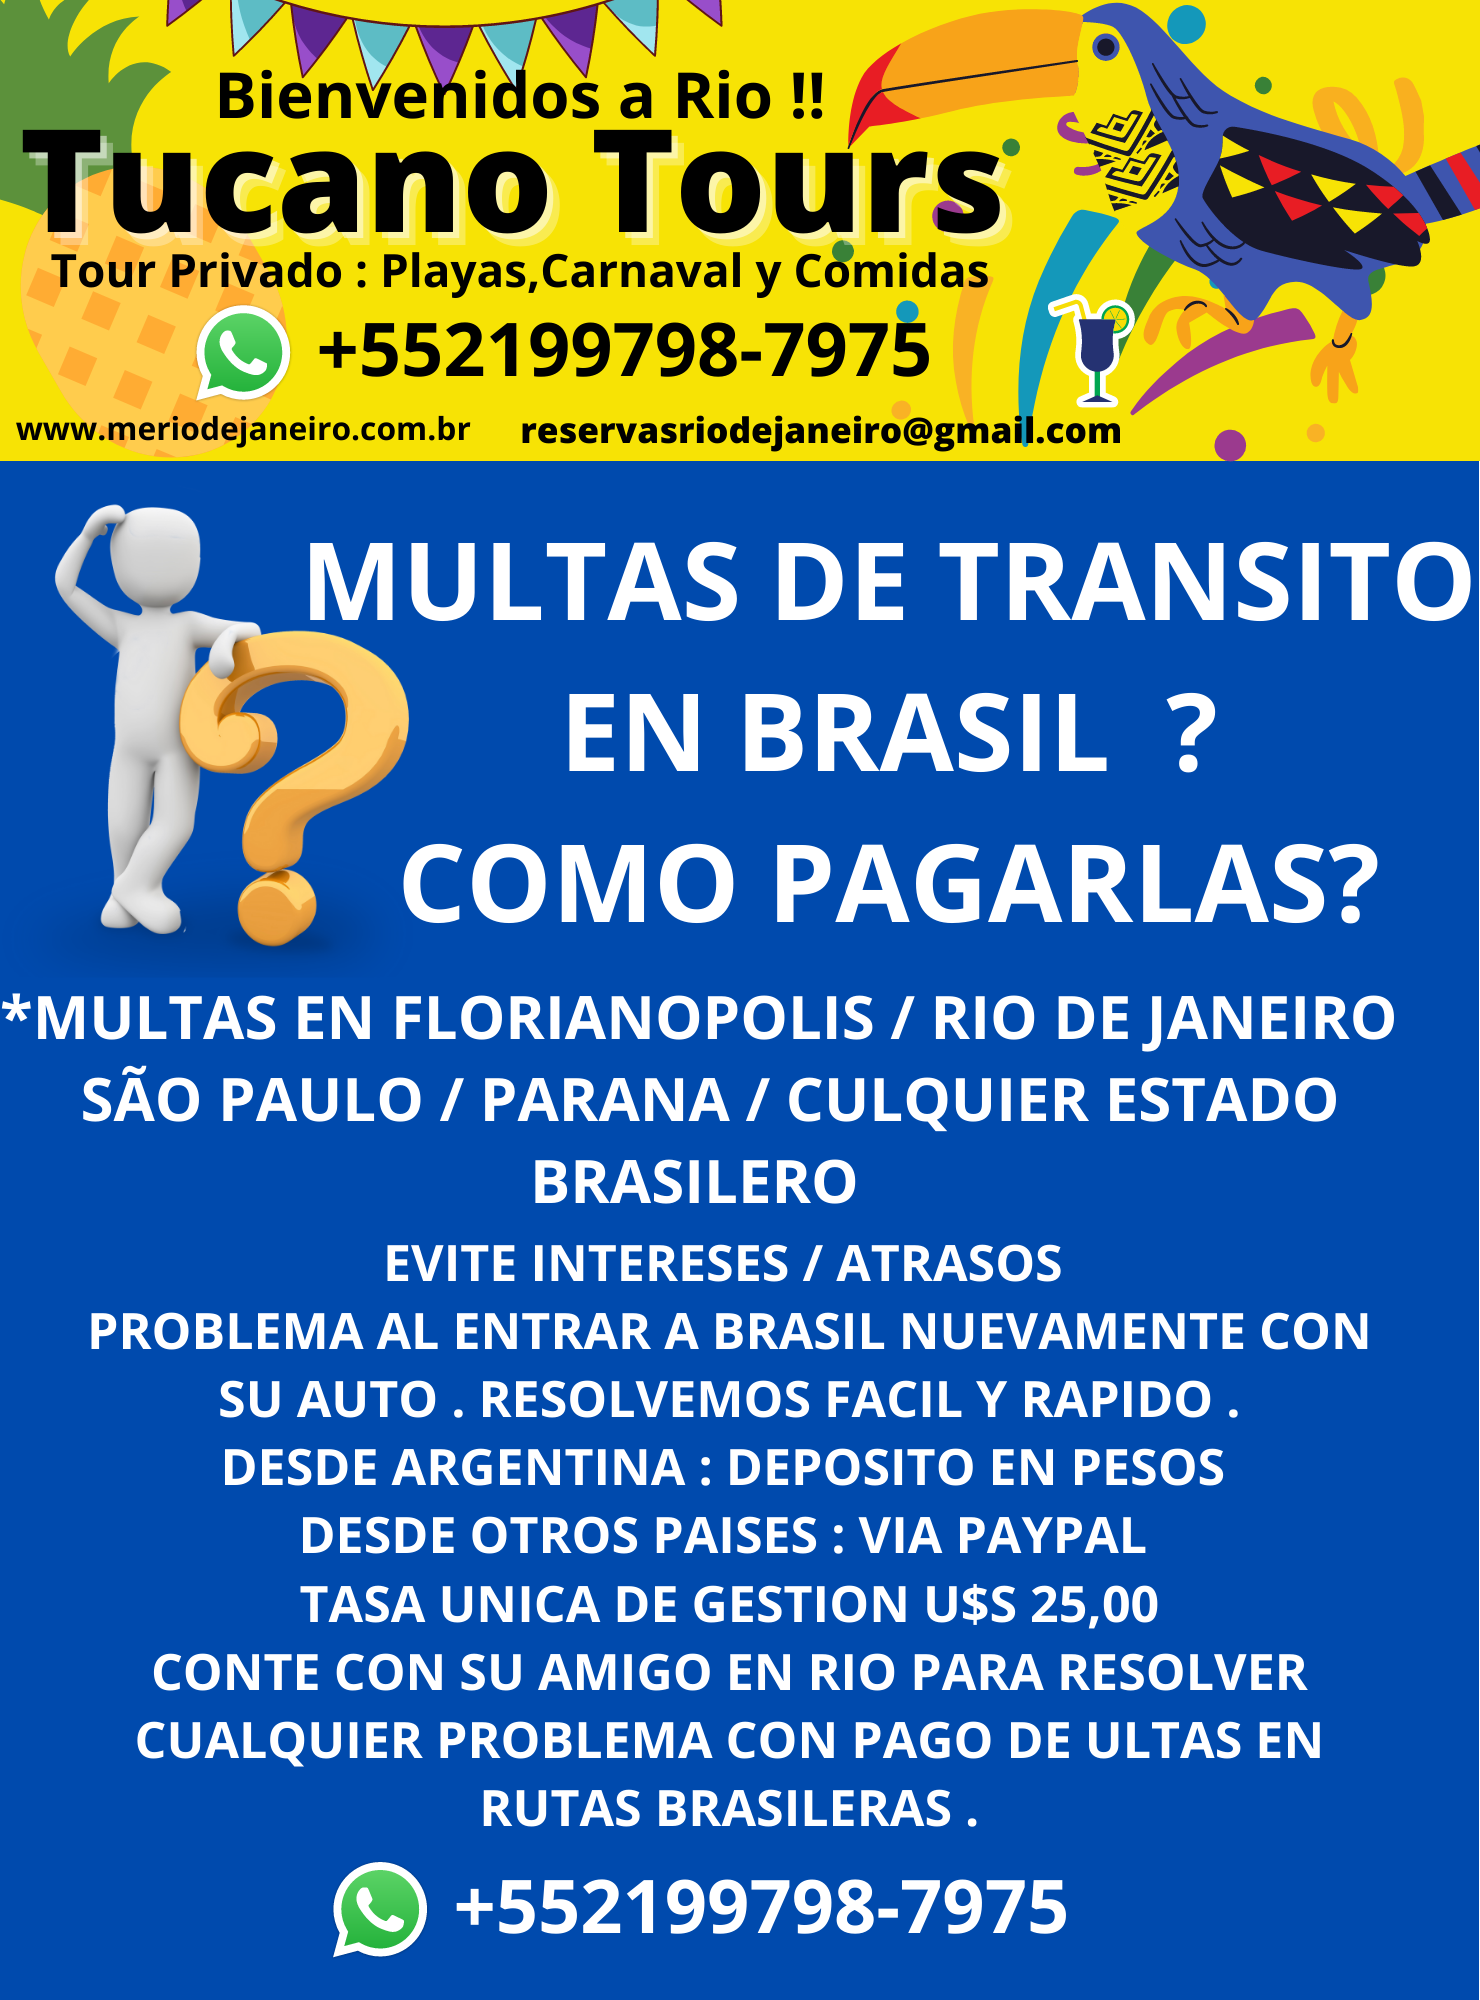 COMO TRAMITAR RESIDENCIA EN BRASIL / COMO ABRIR UN NEGOCIO EN BRASIL / COMO TRAMITAR CPF BRASIL / COMO ABRIR UNA CUENTA BANCARIA EN BRASIL / COMO LEGALIZAR DIPLOMA EN BRASIL / COMO SACAR REGISTRO DE CONDUCIR EN BRASIL   COMO TRAMITAR RESIDENCIA EN BRASIL / COMO ABRIR UN NEGOCIO EN BRASIL / COMO TRAMITAR CPF BRASIL / COMO ABRIR UNA CUENTA BANCARIA EN BRASIL / COMO LEGALIZAR DIPLOMA EN BRASIL / COMO SACAR REGISTRO DE CONDUCIR EN BRASIL   COMO TRAMITAR RESIDENCIA EN BRASIL / COMO ABRIR UN NEGOCIO EN BRASIL / COMO TRAMITAR CPF BRASIL / COMO ABRIR UNA CUENTA BANCARIA EN BRASIL / COMO LEGALIZAR DIPLOMA EN BRASIL / COMO SACAR REGISTRO DE CONDUCIR EN BRASIL   COMO TRAMITAR RESIDENCIA EN BRASIL / COMO ABRIR UN NEGOCIO EN BRASIL / COMO TRAMITAR CPF BRASIL / COMO ABRIR UNA CUENTA BANCARIA EN BRASIL / COMO LEGALIZAR DIPLOMA EN BRASIL / COMO SACAR REGISTRO DE CONDUCIR EN BRASIL   COMO TRAMITAR RESIDENCIA EN BRASIL / COMO ABRIR UN NEGOCIO EN BRASIL / COMO TRAMITAR CPF BRASIL / COMO ABRIR UNA CUENTA BANCARIA EN BRASIL / COMO LEGALIZAR DIPLOMA EN BRASIL / COMO SACAR REGISTRO DE CONDUCIR EN BRASIL   COMO TRAMITAR RESIDENCIA EN BRASIL / COMO ABRIR UN NEGOCIO EN BRASIL / COMO TRAMITAR CPF BRASIL / COMO ABRIR UNA CUENTA BANCARIA EN BRASIL / COMO LEGALIZAR DIPLOMA EN BRASIL / COMO SACAR REGISTRO DE CONDUCIR EN BRASIL   COMO TRAMITAR RESIDENCIA EN BRASIL / COMO ABRIR UN NEGOCIO EN BRASIL / COMO TRAMITAR CPF BRASIL / COMO ABRIR UNA CUENTA BANCARIA EN BRASIL / COMO LEGALIZAR DIPLOMA EN BRASIL / COMO SACAR REGISTRO DE CONDUCIR EN BRASIL   COMO TRAMITAR RESIDENCIA EN BRASIL / COMO ABRIR UN NEGOCIO EN BRASIL / COMO TRAMITAR CPF BRASIL / COMO ABRIR UNA CUENTA BANCARIA EN BRASIL / COMO LEGALIZAR DIPLOMA EN BRASIL / COMO SACAR REGISTRO DE CONDUCIR EN BRASIL   COMO TRAMITAR RESIDENCIA EN BRASIL / COMO ABRIR UN NEGOCIO EN BRASIL / COMO TRAMITAR CPF BRASIL / COMO ABRIR UNA CUENTA BANCARIA EN BRASIL / COMO LEGALIZAR DIPLOMA EN BRASIL / COMO SACAR REGISTRO DE CONDUCIR EN BRASIL   COMO TRAMITAR RESIDENCIA EN BRASIL / COMO ABRIR UN NEGOCIO EN BRASIL / COMO TRAMITAR CPF BRASIL / COMO ABRIR UNA CUENTA BANCARIA EN BRASIL / COMO LEGALIZAR DIPLOMA EN BRASIL / COMO SACAR REGISTRO DE CONDUCIR EN BRASIL   COMO TRAMITAR RESIDENCIA EN BRASIL / COMO ABRIR UN NEGOCIO EN BRASIL / COMO TRAMITAR CPF BRASIL / COMO ABRIR UNA CUENTA BANCARIA EN BRASIL / COMO LEGALIZAR DIPLOMA EN BRASIL / COMO SACAR REGISTRO DE CONDUCIR EN BRASIL   COMO TRAMITAR RESIDENCIA EN BRASIL / COMO ABRIR UN NEGOCIO EN BRASIL / COMO TRAMITAR CPF BRASIL / COMO ABRIR UNA CUENTA BANCARIA EN BRASIL / COMO LEGALIZAR DIPLOMA EN BRASIL / COMO SACAR REGISTRO DE CONDUCIR EN BRASIL   COMO TRAMITAR RESIDENCIA EN BRASIL / COMO ABRIR UN NEGOCIO EN BRASIL / COMO TRAMITAR CPF BRASIL / COMO ABRIR UNA CUENTA BANCARIA EN BRASIL / COMO LEGALIZAR DIPLOMA EN BRASIL / COMO SACAR REGISTRO DE CONDUCIR EN BRASIL   COMO TRAMITAR RESIDENCIA EN BRASIL / COMO ABRIR UN NEGOCIO EN BRASIL / COMO TRAMITAR CPF BRASIL / COMO ABRIR UNA CUENTA BANCARIA EN BRASIL / COMO LEGALIZAR DIPLOMA EN BRASIL / COMO SACAR REGISTRO DE CONDUCIR EN BRASIL   COMO TRAMITAR RESIDENCIA EN BRASIL / COMO ABRIR UN NEGOCIO EN BRASIL / COMO TRAMITAR CPF BRASIL / COMO ABRIR UNA CUENTA BANCARIA EN BRASIL / COMO LEGALIZAR DIPLOMA EN BRASIL / COMO SACAR REGISTRO DE CONDUCIR EN BRASIL   COMO TRAMITAR RESIDENCIA EN BRASIL / COMO ABRIR UN NEGOCIO EN BRASIL / COMO TRAMITAR CPF BRASIL / COMO ABRIR UNA CUENTA BANCARIA EN BRASIL / COMO LEGALIZAR DIPLOMA EN BRASIL / COMO SACAR REGISTRO DE CONDUCIR EN BRASIL   COMO TRAMITAR RESIDENCIA EN BRASIL / COMO ABRIR UN NEGOCIO EN BRASIL / COMO TRAMITAR CPF BRASIL / COMO ABRIR UNA CUENTA BANCARIA EN BRASIL / COMO LEGALIZAR DIPLOMA EN BRASIL / COMO SACAR REGISTRO DE CONDUCIR EN BRASIL   COMO TRAMITAR RESIDENCIA EN BRASIL / COMO ABRIR UN NEGOCIO EN BRASIL / COMO TRAMITAR CPF BRASIL / COMO ABRIR UNA CUENTA BANCARIA EN BRASIL / COMO LEGALIZAR DIPLOMA EN BRASIL / COMO SACAR REGISTRO DE CONDUCIR EN BRASIL   COMO TRAMITAR RESIDENCIA EN BRASIL / COMO ABRIR UN NEGOCIO EN BRASIL / COMO TRAMITAR CPF BRASIL / COMO ABRIR UNA CUENTA BANCARIA EN BRASIL / COMO LEGALIZAR DIPLOMA EN BRASIL / COMO SACAR REGISTRO DE CONDUCIR EN BRASIL   COMO TRAMITAR RESIDENCIA EN BRASIL / COMO ABRIR UN NEGOCIO EN BRASIL / COMO TRAMITAR CPF BRASIL / COMO ABRIR UNA CUENTA BANCARIA EN BRASIL / COMO LEGALIZAR DIPLOMA EN BRASIL / COMO SACAR REGISTRO DE CONDUCIR EN BRASIL   COMO TRAMITAR RESIDENCIA EN BRASIL / COMO ABRIR UN NEGOCIO EN BRASIL / COMO TRAMITAR CPF BRASIL / COMO ABRIR UNA CUENTA BANCARIA EN BRASIL / COMO LEGALIZAR DIPLOMA EN BRASIL / COMO SACAR REGISTRO DE CONDUCIR EN BRASIL   COMO TRAMITAR RESIDENCIA EN BRASIL / COMO ABRIR UN NEGOCIO EN BRASIL / COMO TRAMITAR CPF BRASIL / COMO ABRIR UNA CUENTA BANCARIA EN BRASIL / COMO LEGALIZAR DIPLOMA EN BRASIL / COMO SACAR REGISTRO DE CONDUCIR EN BRASIL   COMO TRAMITAR RESIDENCIA EN BRASIL / COMO ABRIR UN NEGOCIO EN BRASIL / COMO TRAMITAR CPF BRASIL / COMO ABRIR UNA CUENTA BANCARIA EN BRASIL / COMO LEGALIZAR DIPLOMA EN BRASIL / COMO SACAR REGISTRO DE CONDUCIR EN BRASIL   COMO TRAMITAR RESIDENCIA EN BRASIL / COMO ABRIR UN NEGOCIO EN BRASIL / COMO TRAMITAR CPF BRASIL / COMO ABRIR UNA CUENTA BANCARIA EN BRASIL / COMO LEGALIZAR DIPLOMA EN BRASIL / COMO SACAR REGISTRO DE CONDUCIR EN BRASIL   COMO TRAMITAR RESIDENCIA EN BRASIL / COMO ABRIR UN NEGOCIO EN BRASIL / COMO TRAMITAR CPF BRASIL / COMO ABRIR UNA CUENTA BANCARIA EN BRASIL / COMO LEGALIZAR DIPLOMA EN BRASIL / COMO SACAR REGISTRO DE CONDUCIR EN BRASIL   COMO TRAMITAR RESIDENCIA EN BRASIL / COMO ABRIR UN NEGOCIO EN BRASIL / COMO TRAMITAR CPF BRASIL / COMO ABRIR UNA CUENTA BANCARIA EN BRASIL / COMO LEGALIZAR DIPLOMA EN BRASIL / COMO SACAR REGISTRO DE CONDUCIR EN BRASIL   COMO TRAMITAR RESIDENCIA EN BRASIL / COMO ABRIR UN NEGOCIO EN BRASIL / COMO TRAMITAR CPF BRASIL / COMO ABRIR UNA CUENTA BANCARIA EN BRASIL / COMO LEGALIZAR DIPLOMA EN BRASIL / COMO SACAR REGISTRO DE CONDUCIR EN BRASIL   COMO TRAMITAR RESIDENCIA EN BRASIL / COMO ABRIR UN NEGOCIO EN BRASIL / COMO TRAMITAR CPF BRASIL / COMO ABRIR UNA CUENTA BANCARIA EN BRASIL / COMO LEGALIZAR DIPLOMA EN BRASIL / COMO SACAR REGISTRO DE CONDUCIR EN BRASIL   COMO TRAMITAR RESIDENCIA EN BRASIL / COMO ABRIR UN NEGOCIO EN BRASIL / COMO TRAMITAR CPF BRASIL / COMO ABRIR UNA CUENTA BANCARIA EN BRASIL / COMO LEGALIZAR DIPLOMA EN BRASIL / COMO SACAR REGISTRO DE CONDUCIR EN BRASIL   COMO TRAMITAR RESIDENCIA EN BRASIL / COMO ABRIR UN NEGOCIO EN BRASIL / COMO TRAMITAR CPF BRASIL / COMO ABRIR UNA CUENTA BANCARIA EN BRASIL / COMO LEGALIZAR DIPLOMA EN BRASIL / COMO SACAR REGISTRO DE CONDUCIR EN BRASIL   COMO TRAMITAR RESIDENCIA EN BRASIL / COMO ABRIR UN NEGOCIO EN BRASIL / COMO TRAMITAR CPF BRASIL / COMO ABRIR UNA CUENTA BANCARIA EN BRASIL / COMO LEGALIZAR DIPLOMA EN BRASIL / COMO SACAR REGISTRO DE CONDUCIR EN BRASIL   COMO TRAMITAR RESIDENCIA EN BRASIL / COMO ABRIR UN NEGOCIO EN BRASIL / COMO TRAMITAR CPF BRASIL / COMO ABRIR UNA CUENTA BANCARIA EN BRASIL / COMO LEGALIZAR DIPLOMA EN BRASIL / COMO SACAR REGISTRO DE CONDUCIR EN BRASIL   COMO TRAMITAR RESIDENCIA EN BRASIL / COMO ABRIR UN NEGOCIO EN BRASIL / COMO TRAMITAR CPF BRASIL / COMO ABRIR UNA CUENTA BANCARIA EN BRASIL / COMO LEGALIZAR DIPLOMA EN BRASIL / COMO SACAR REGISTRO DE CONDUCIR EN BRASIL   COMO TRAMITAR RESIDENCIA EN BRASIL / COMO ABRIR UN NEGOCIO EN BRASIL / COMO TRAMITAR CPF BRASIL / COMO ABRIR UNA CUENTA BANCARIA EN BRASIL / COMO LEGALIZAR DIPLOMA EN BRASIL / COMO SACAR REGISTRO DE CONDUCIR EN BRASIL   COMO TRAMITAR RESIDENCIA EN BRASIL / COMO ABRIR UN NEGOCIO EN BRASIL / COMO TRAMITAR CPF BRASIL / COMO ABRIR UNA CUENTA BANCARIA EN BRASIL / COMO LEGALIZAR DIPLOMA EN BRASIL / COMO SACAR REGISTRO DE CONDUCIR EN BRASIL   